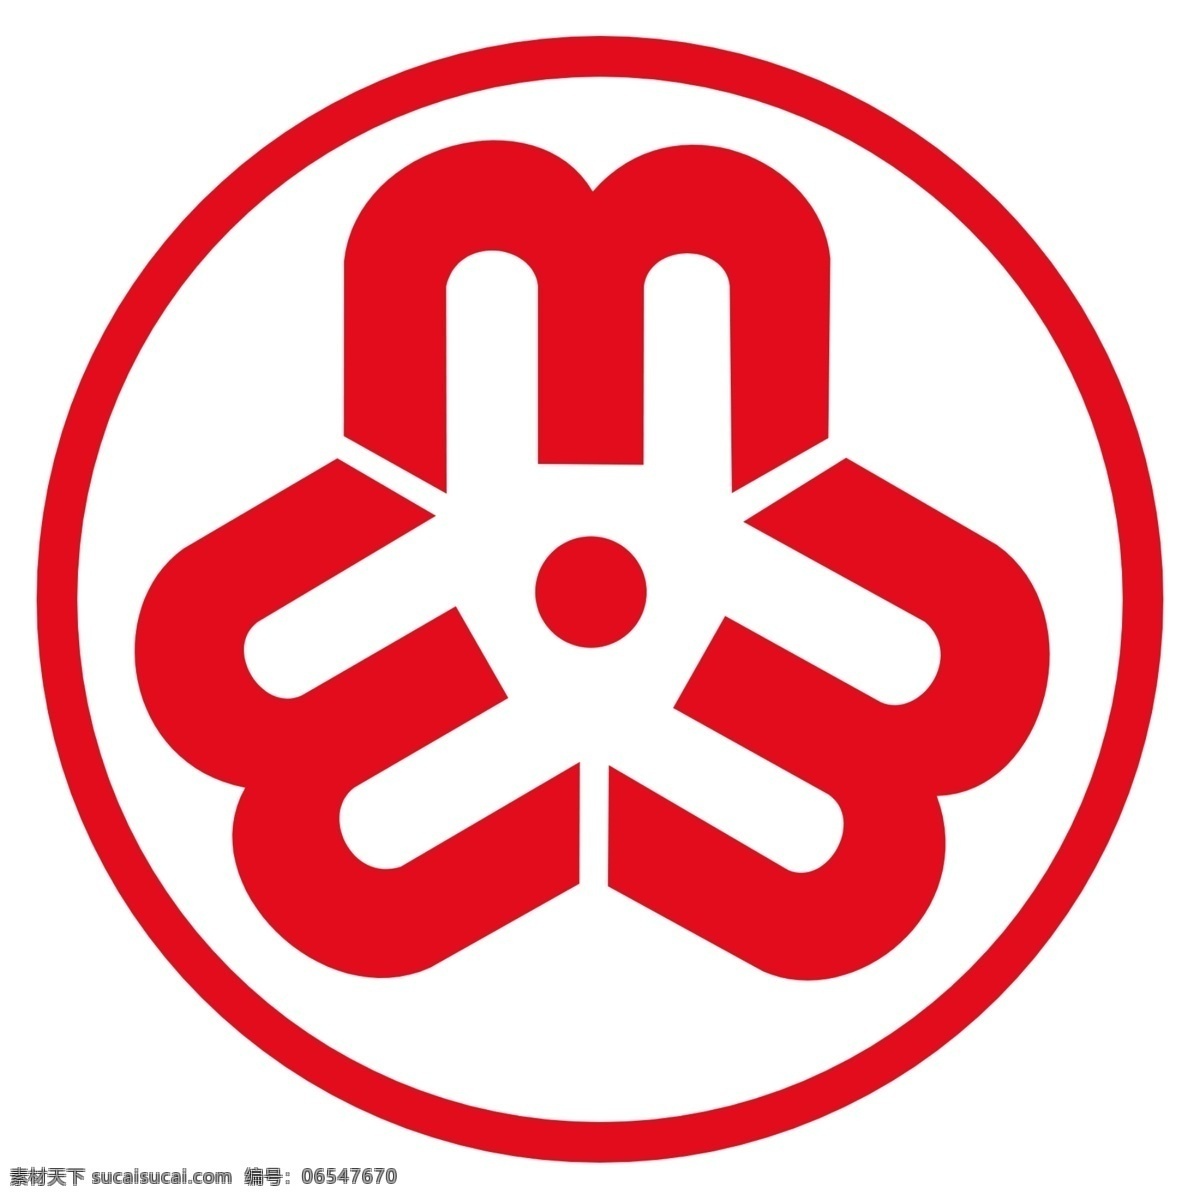 中国妇联 会徽 logo 妇联 妇联标志